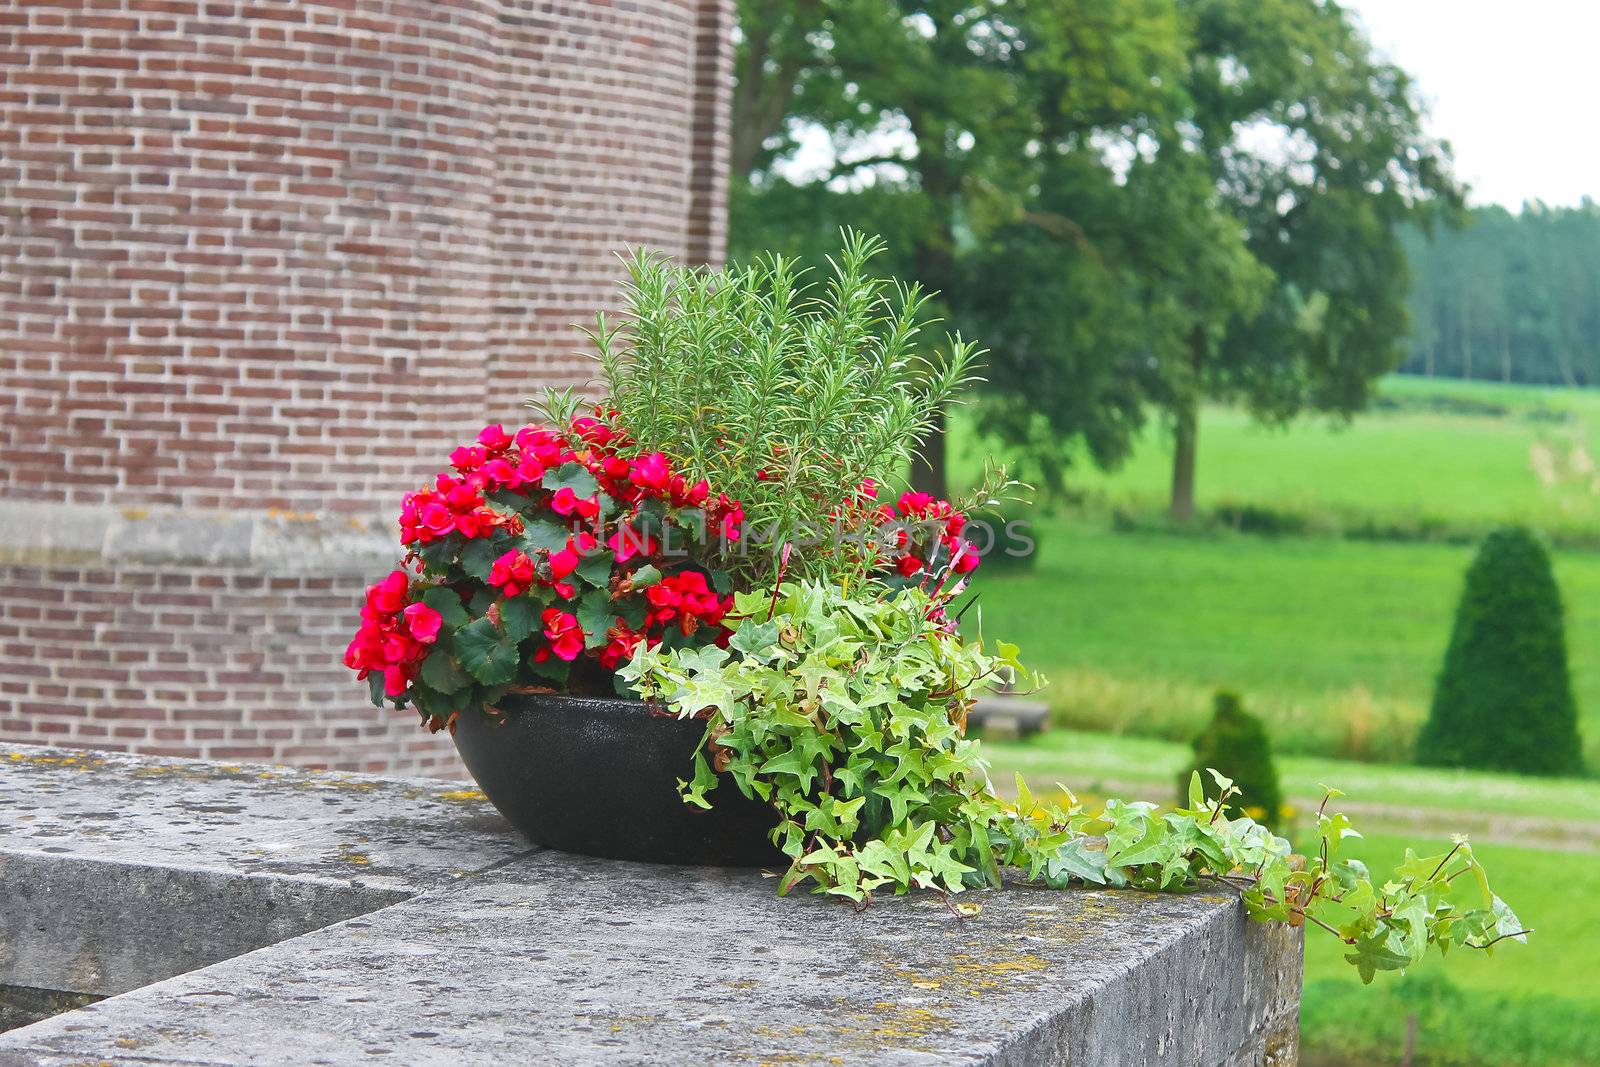 Flowers in the castle Heeswijk . Netherlands by NickNick